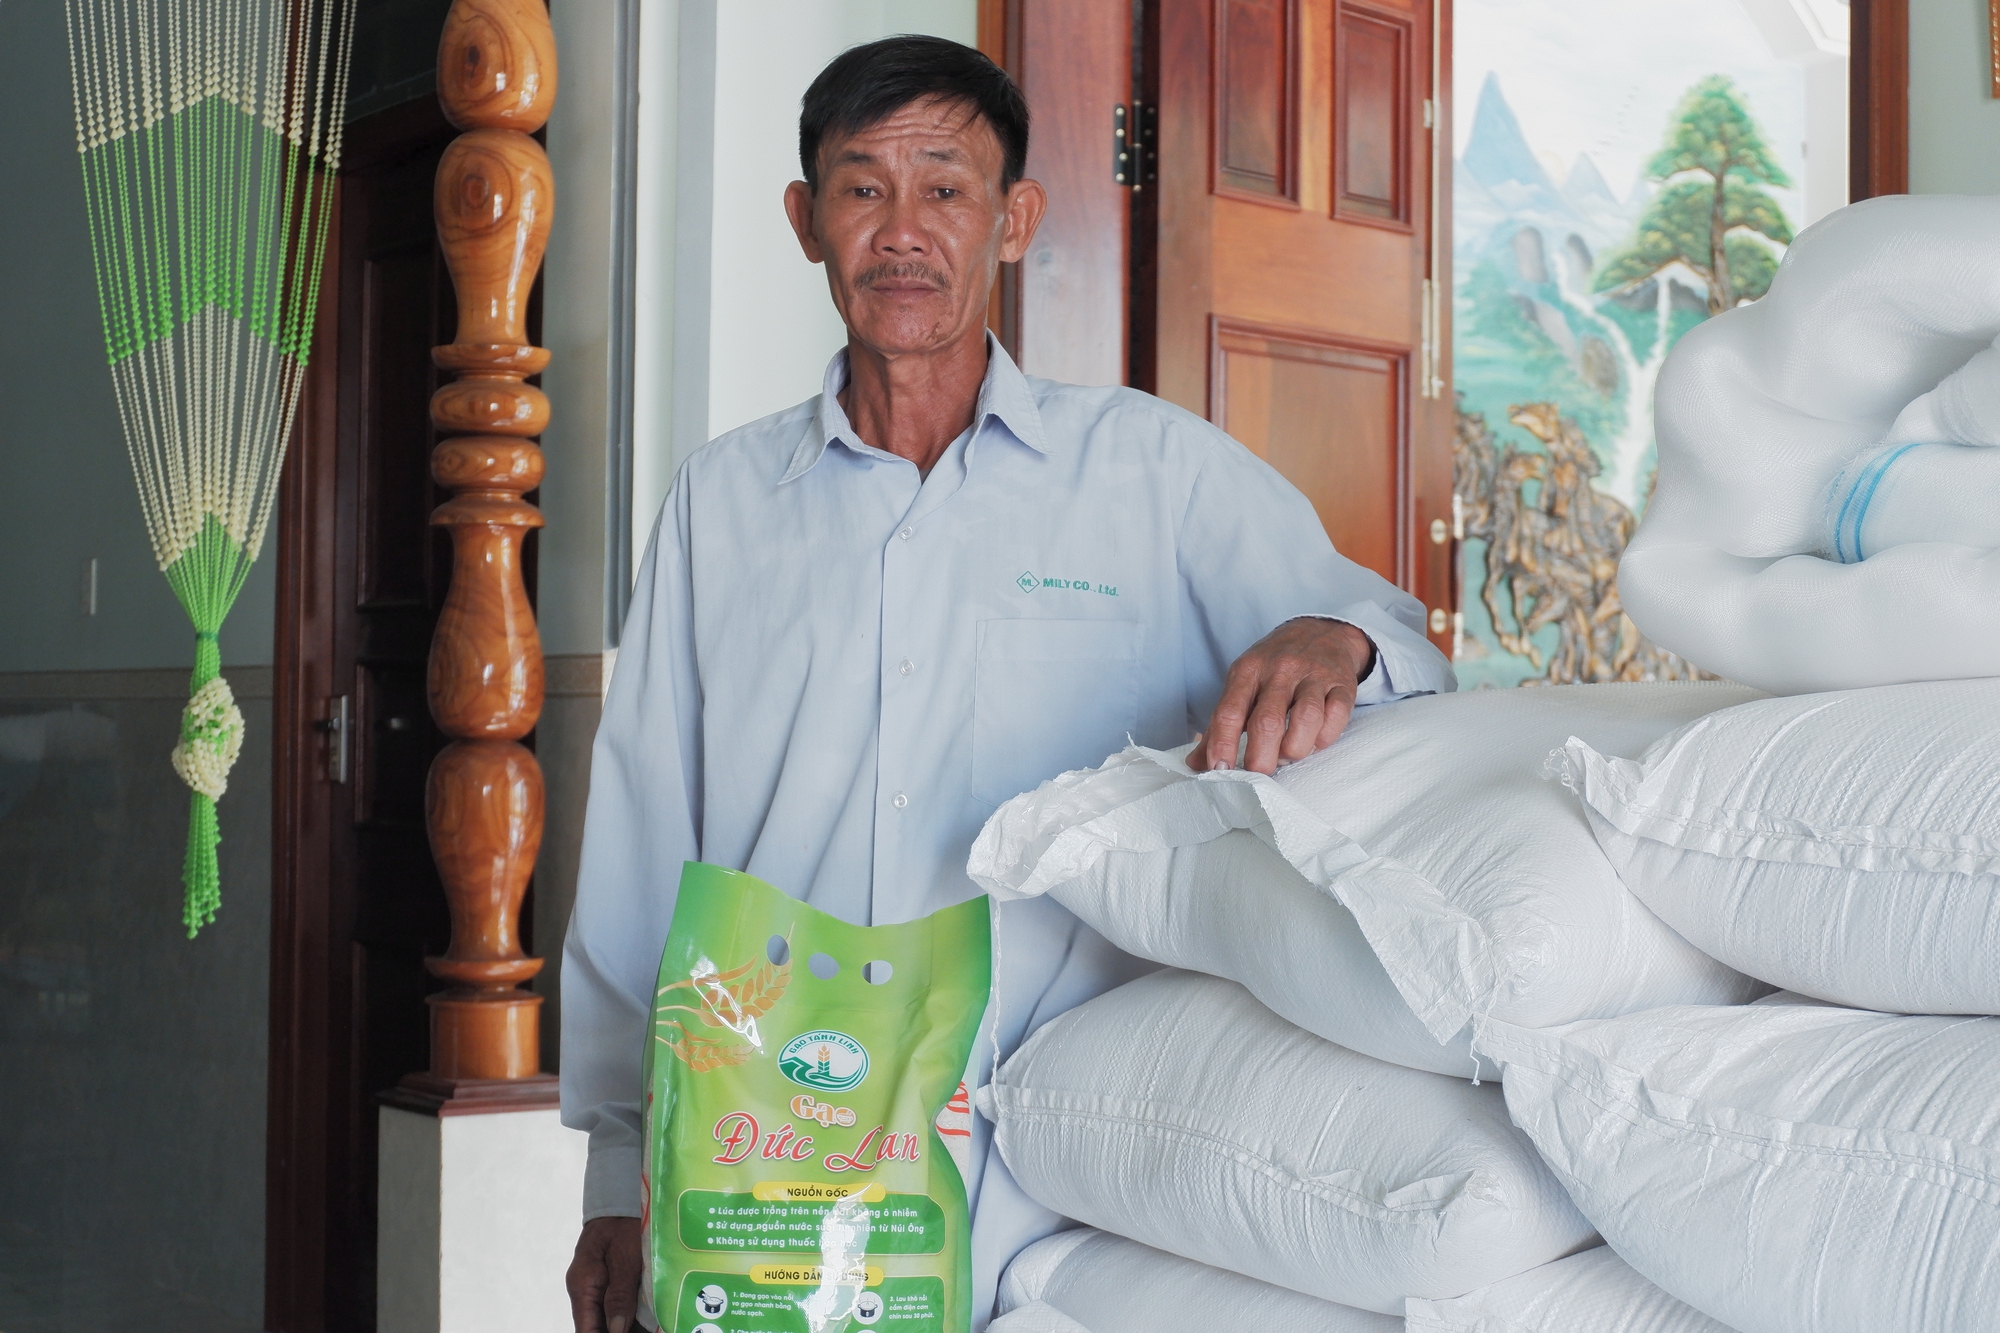 Thay đổi lớn trong sản xuất lúa chất lượng cao, liên kết đầu ra để lợi nhuận tăng thêm từ 10 - 15% - Ảnh 5.